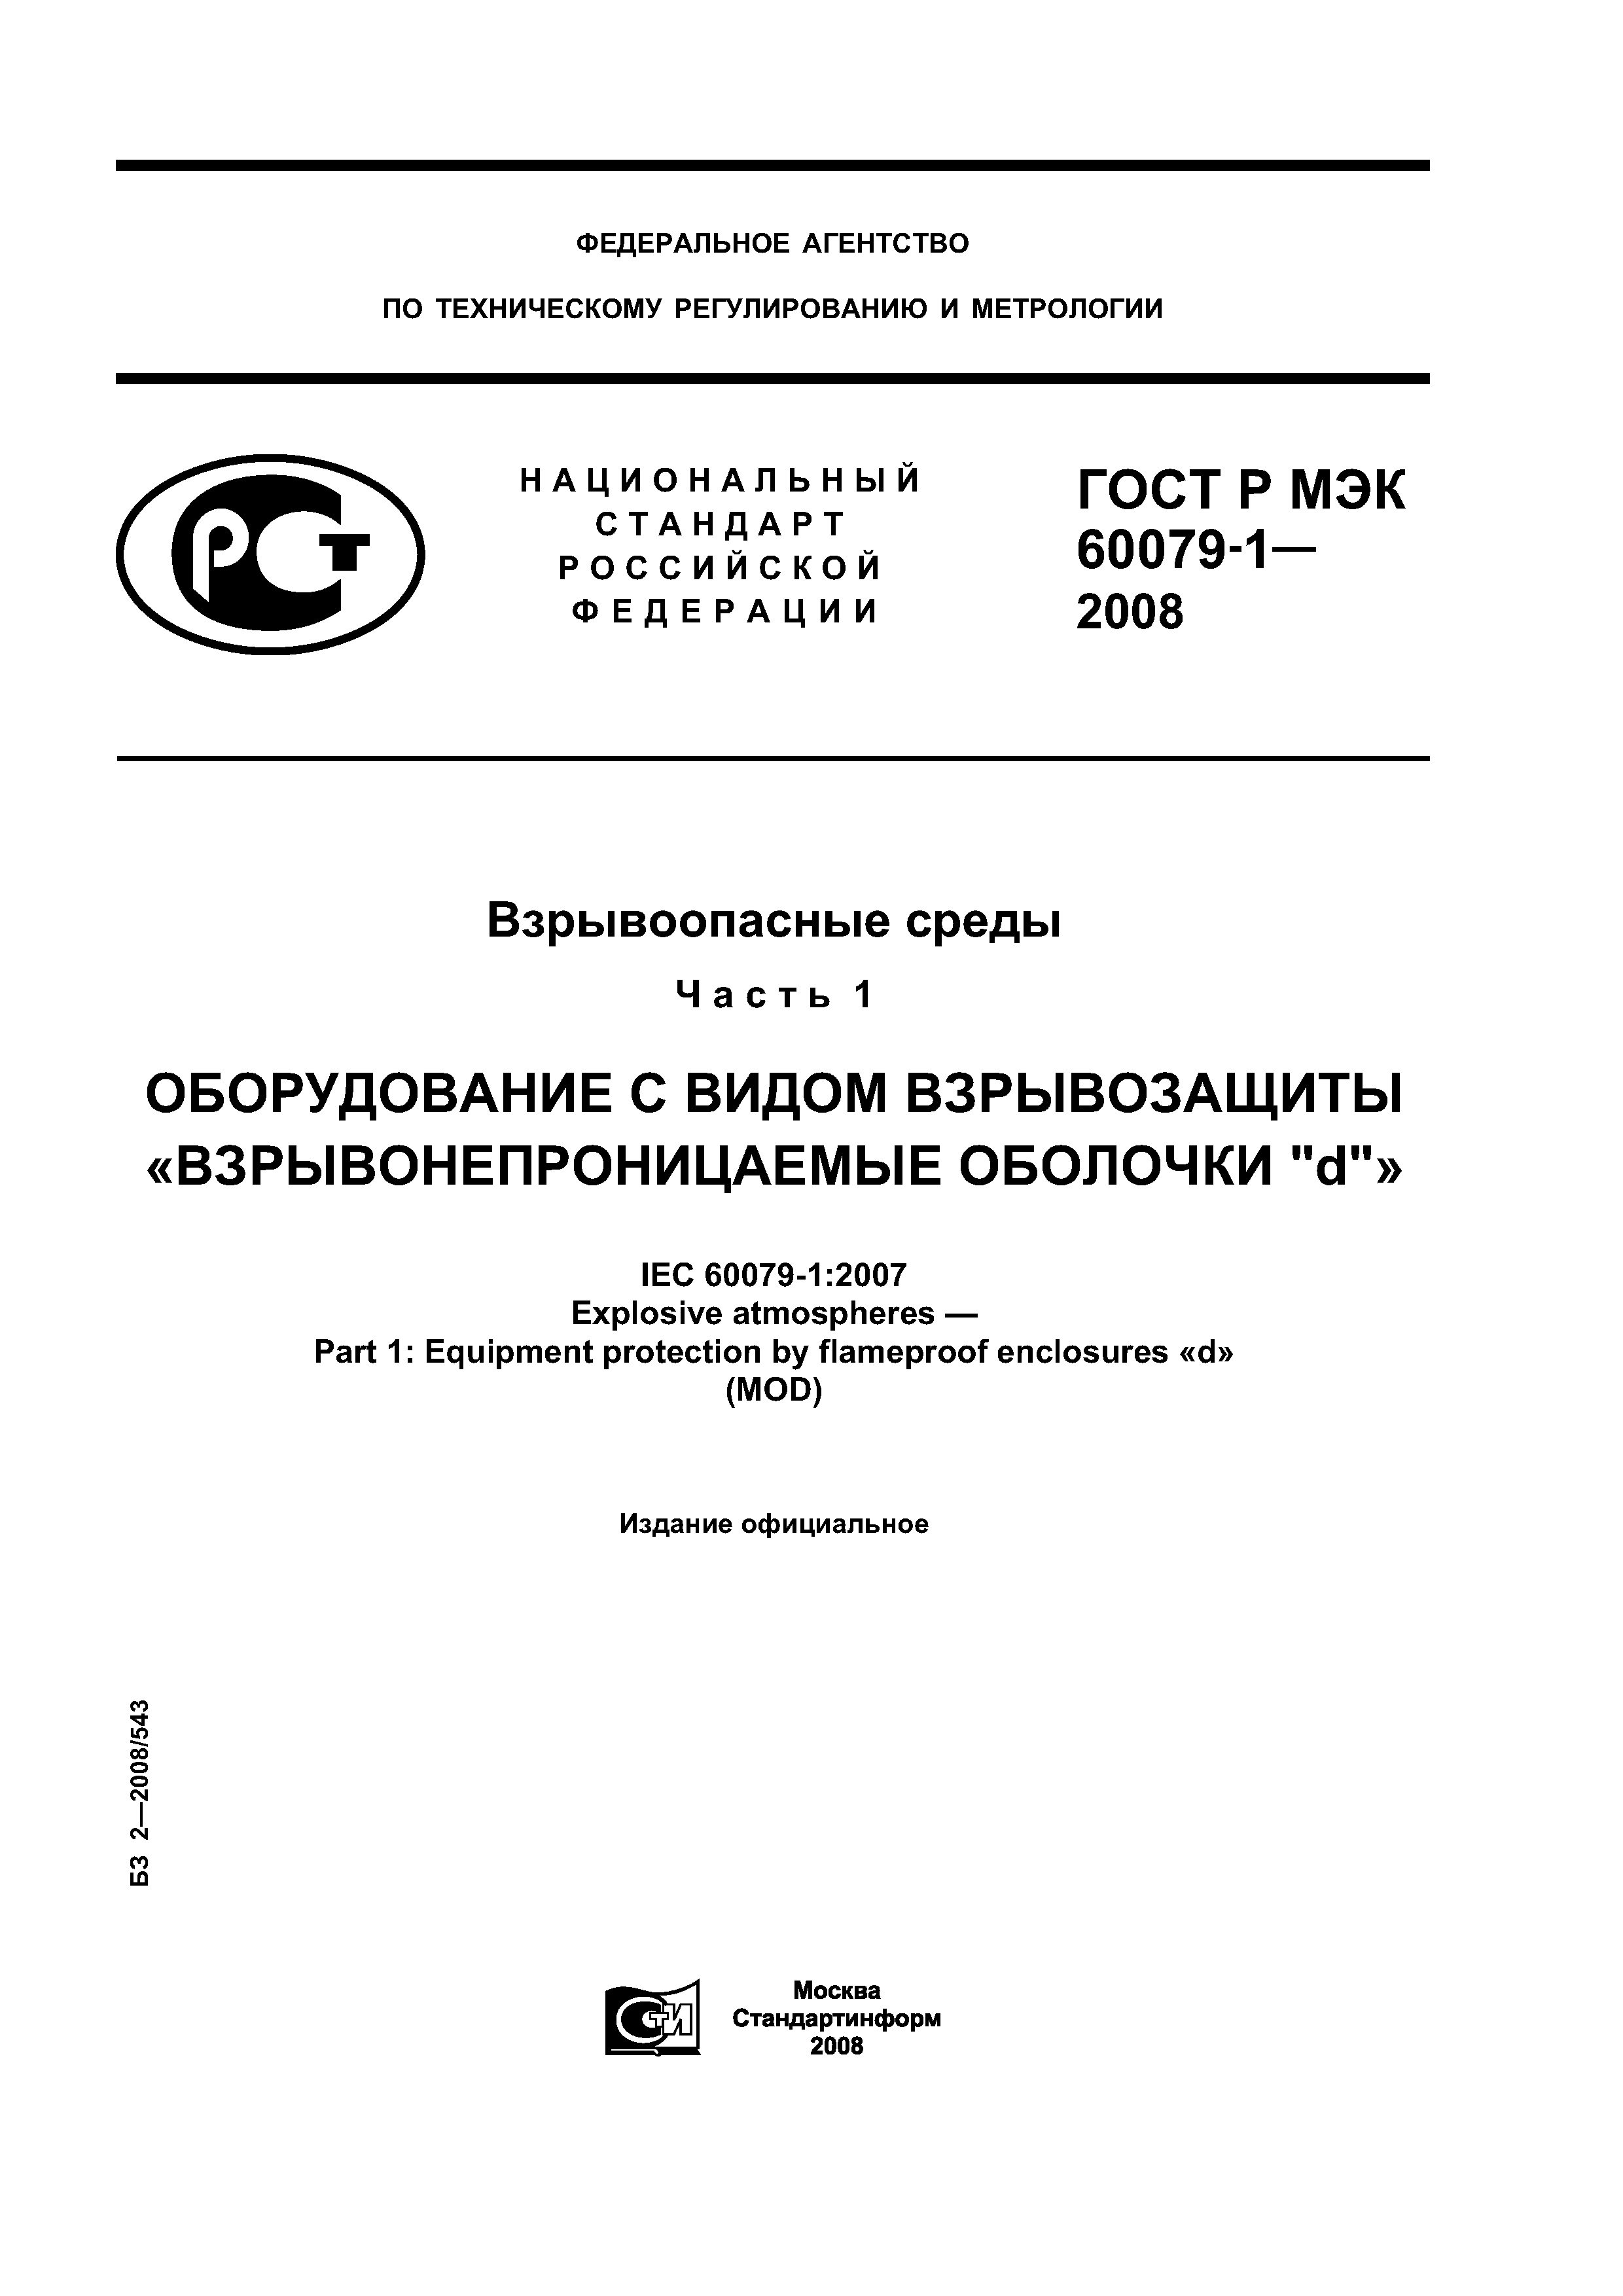 ГОСТ Р МЭК 60079-1-2008